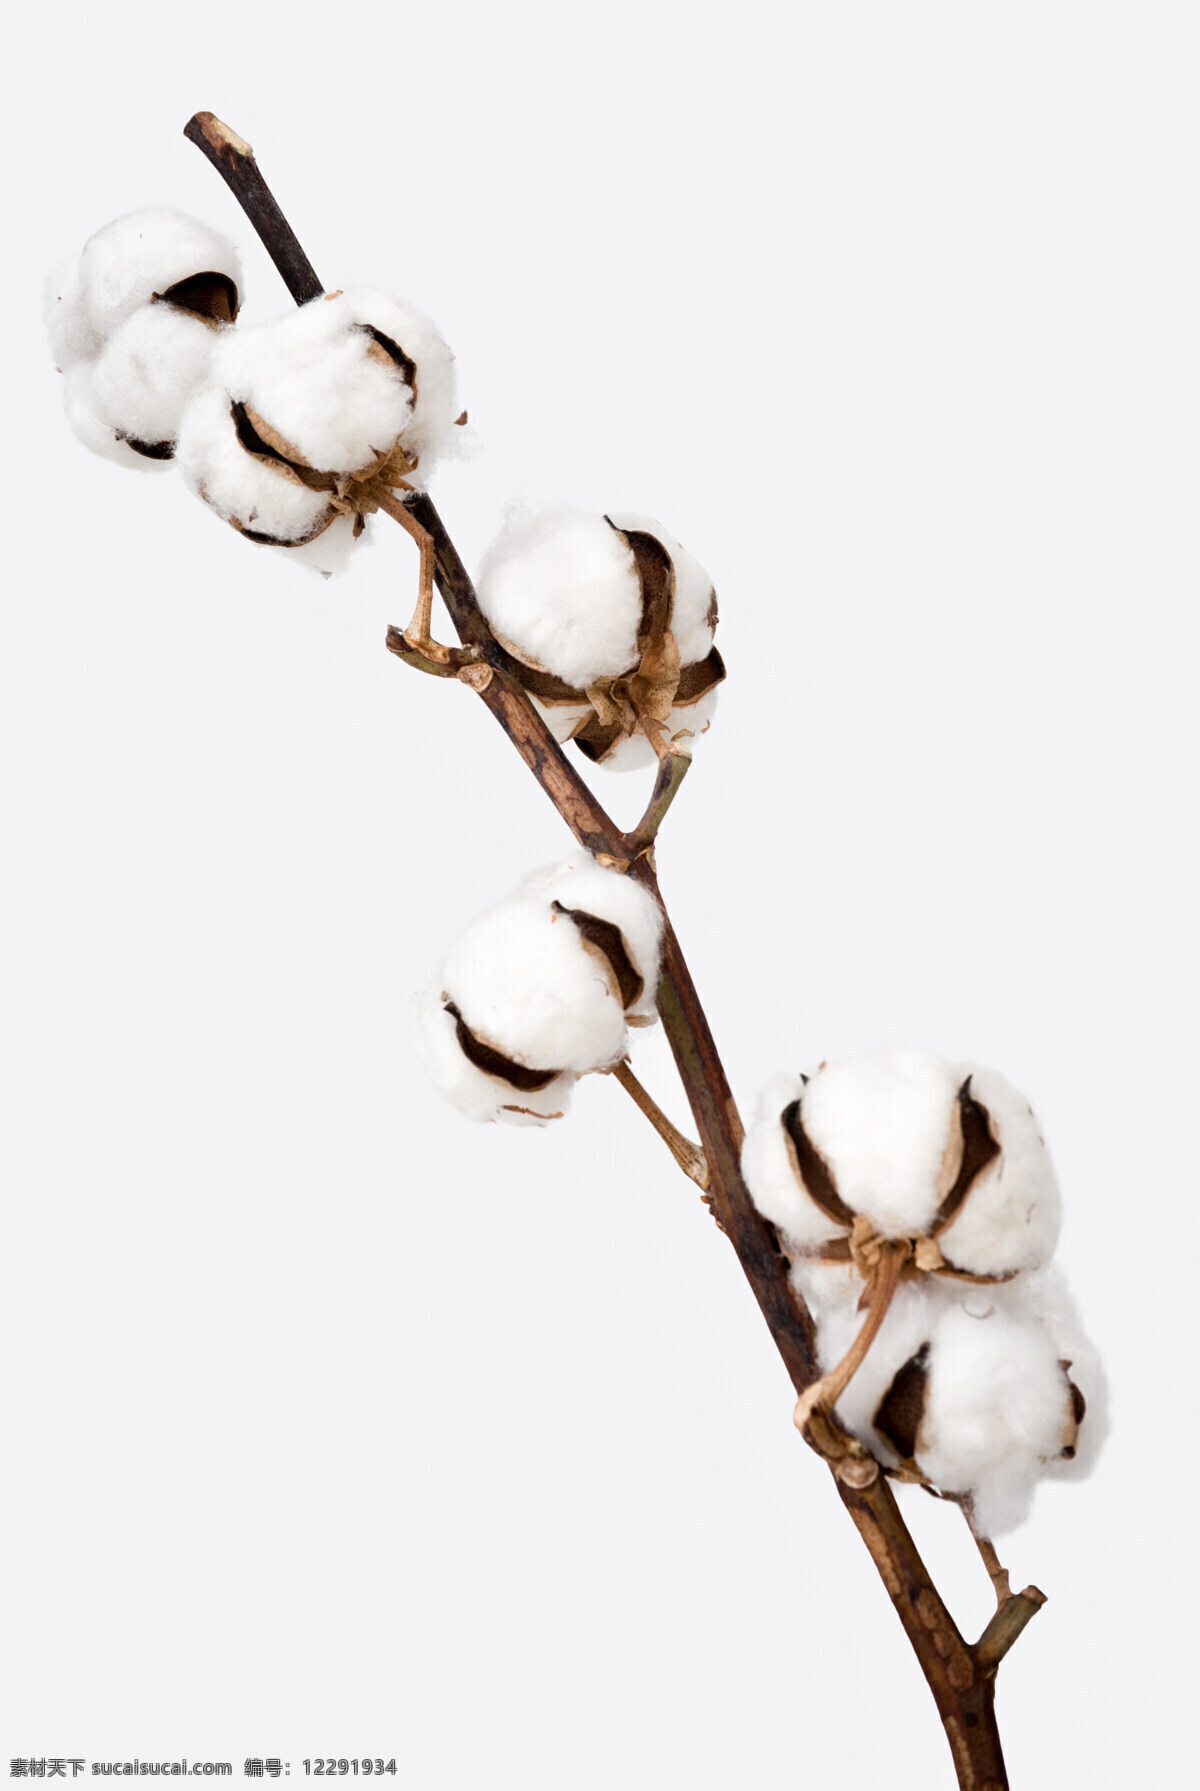 一枝棉花 植物 洁白 棉花 精致 插花 生物世界 花草